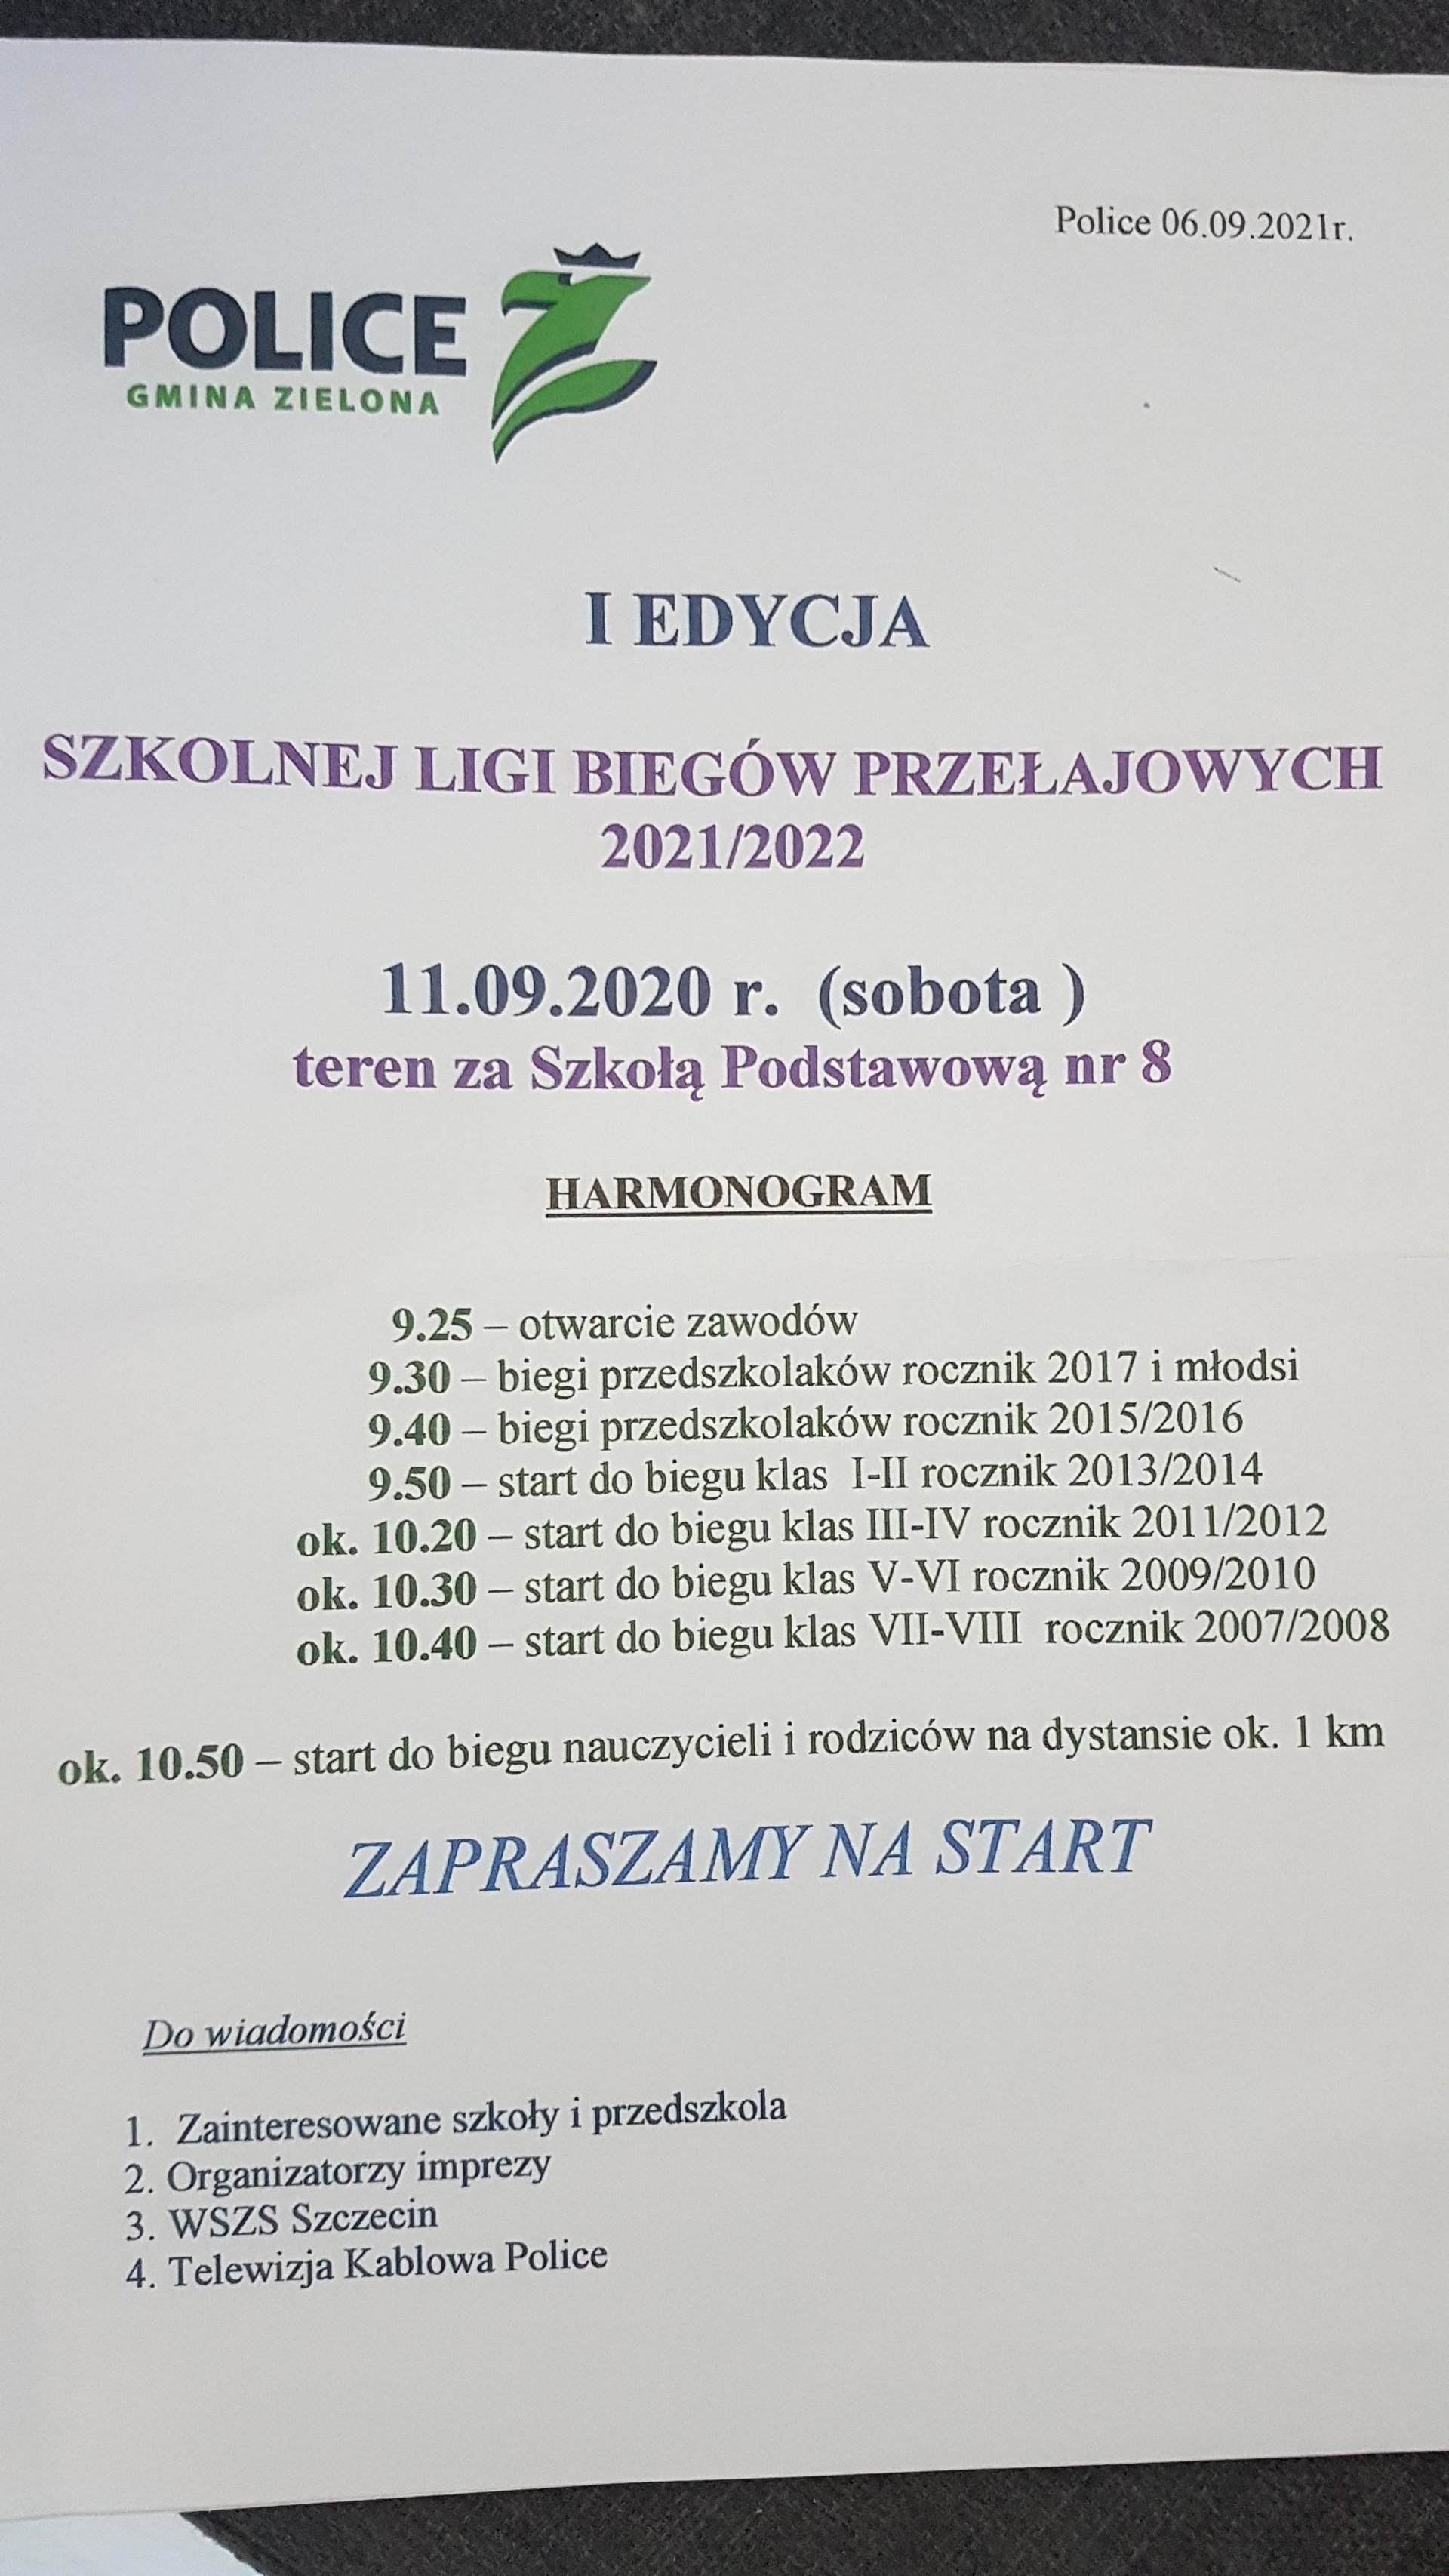 I Edycja Szkolnej Ligii Biegów Przełajowych 2021/2022